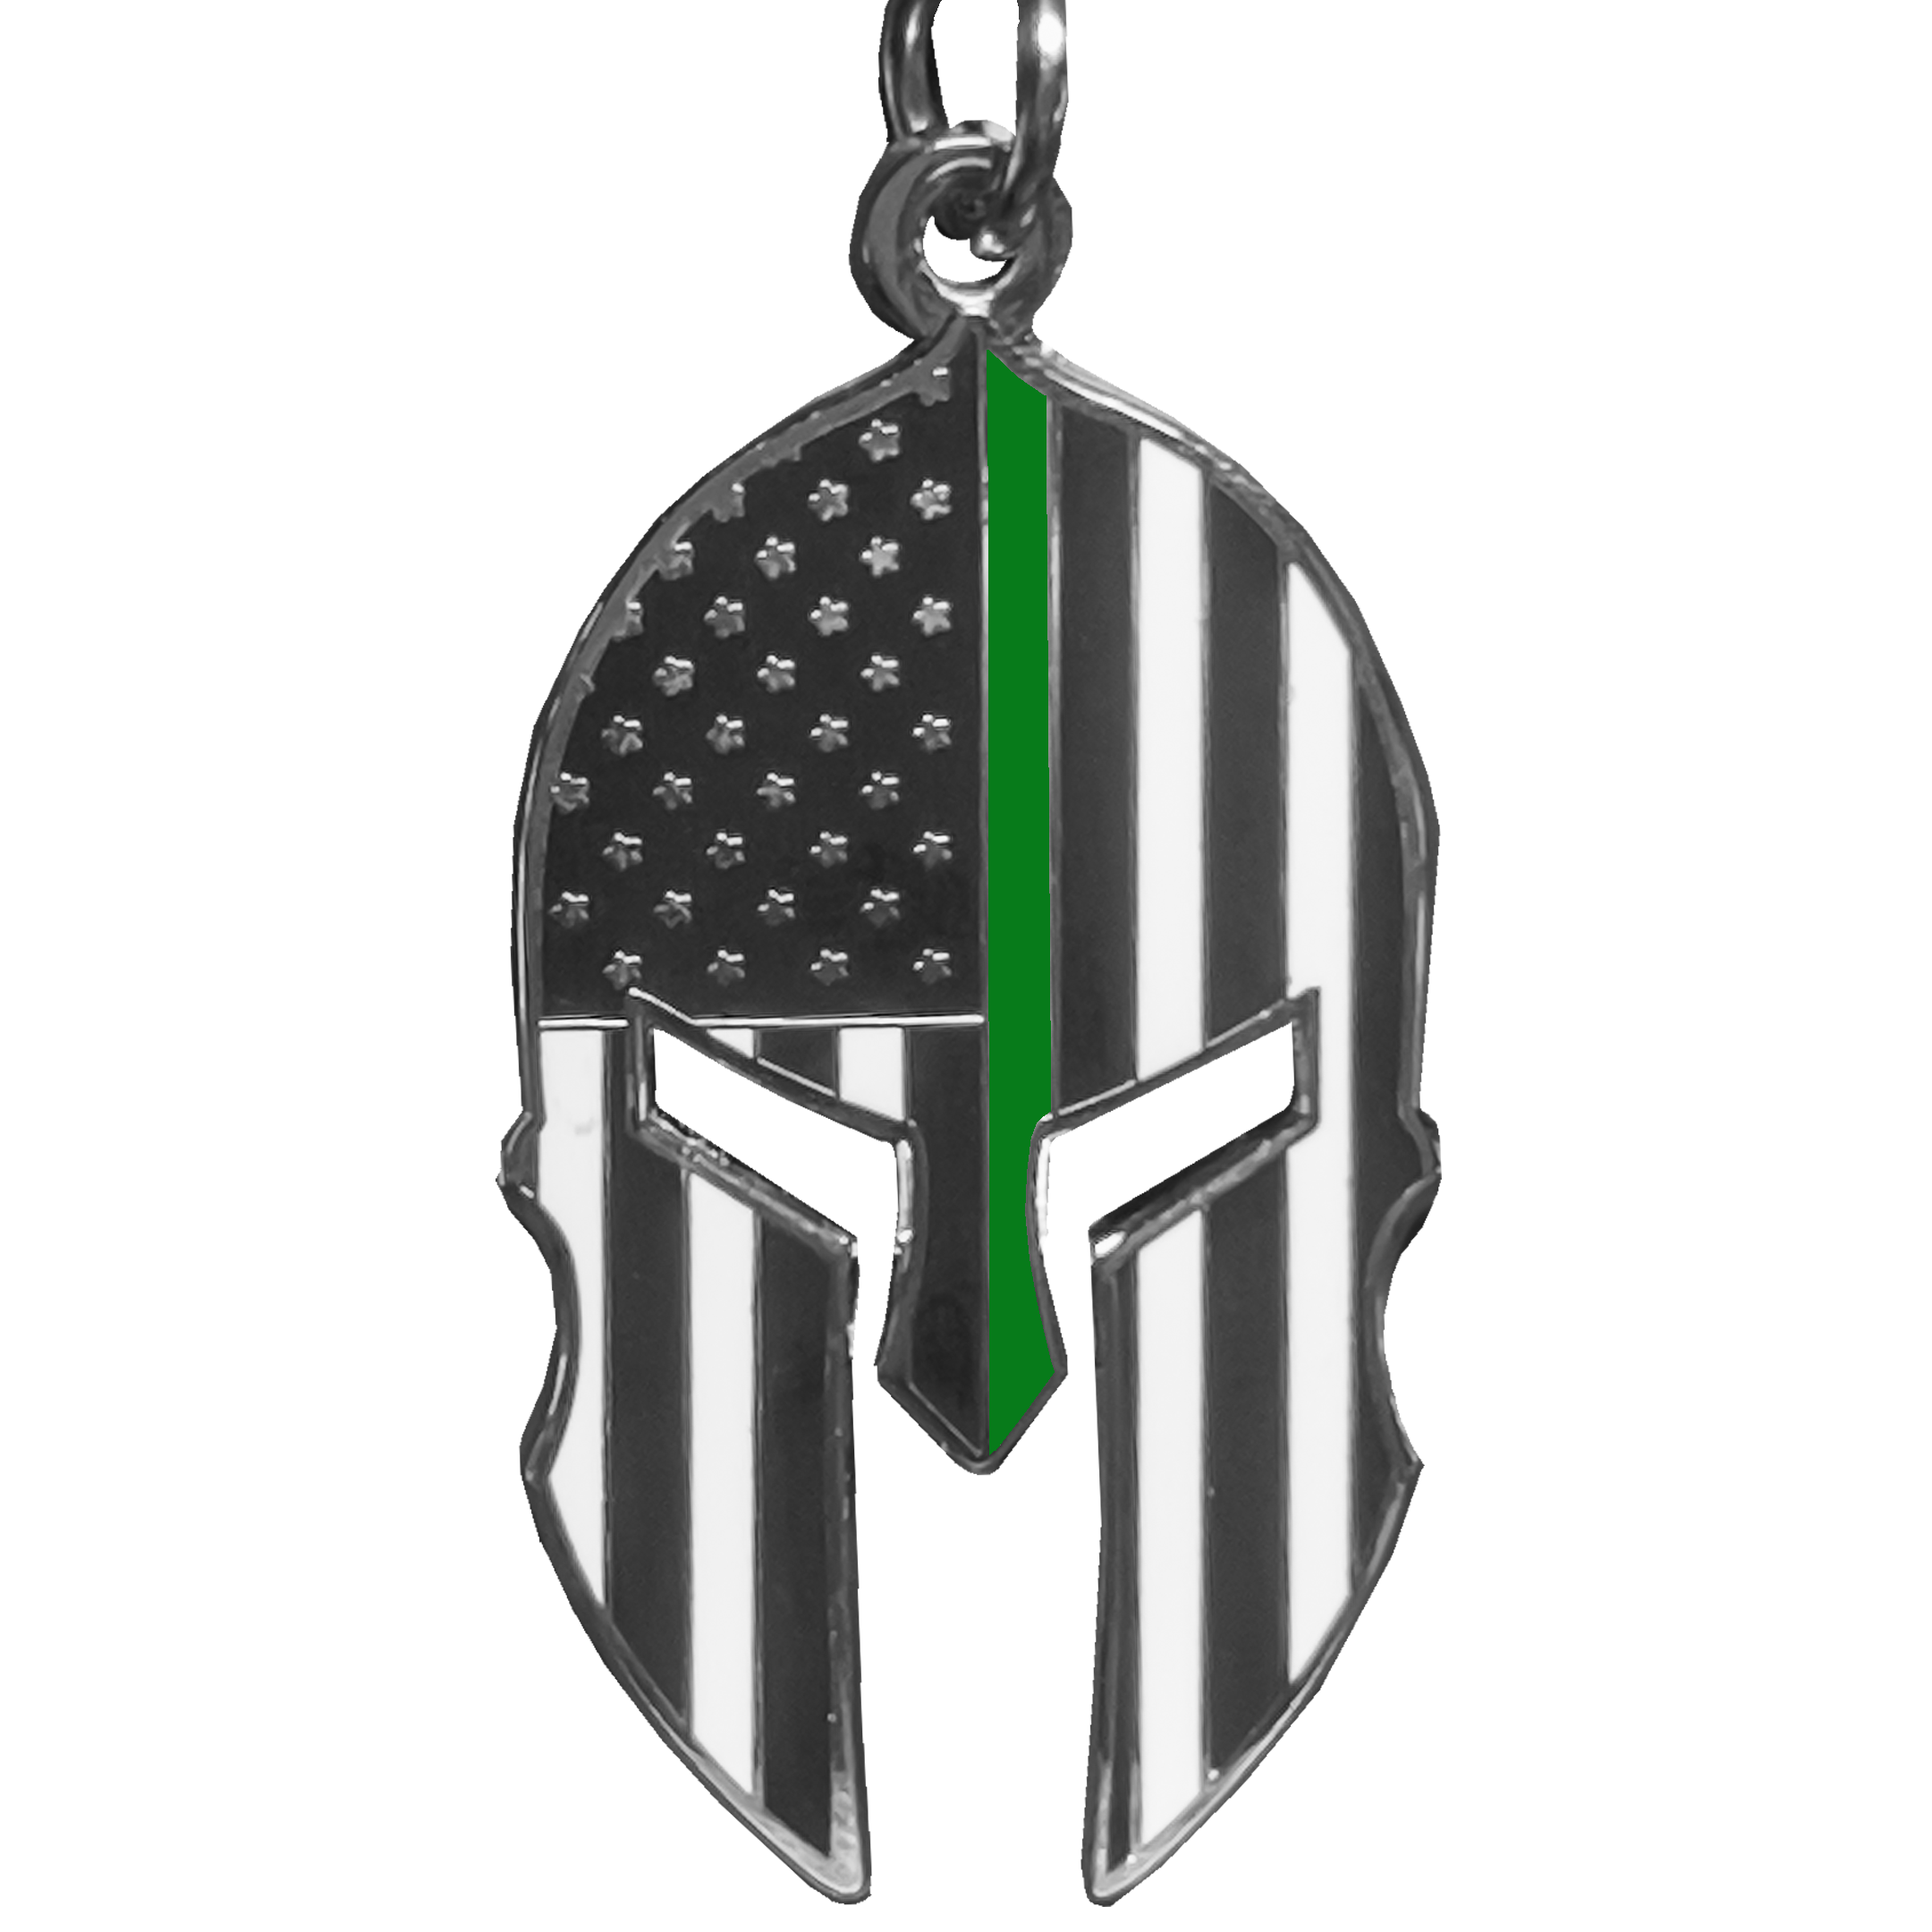 GHKB-1B Gladiator Police Thin Green Line Flag Spartan Helmet Keychain Border Patrol